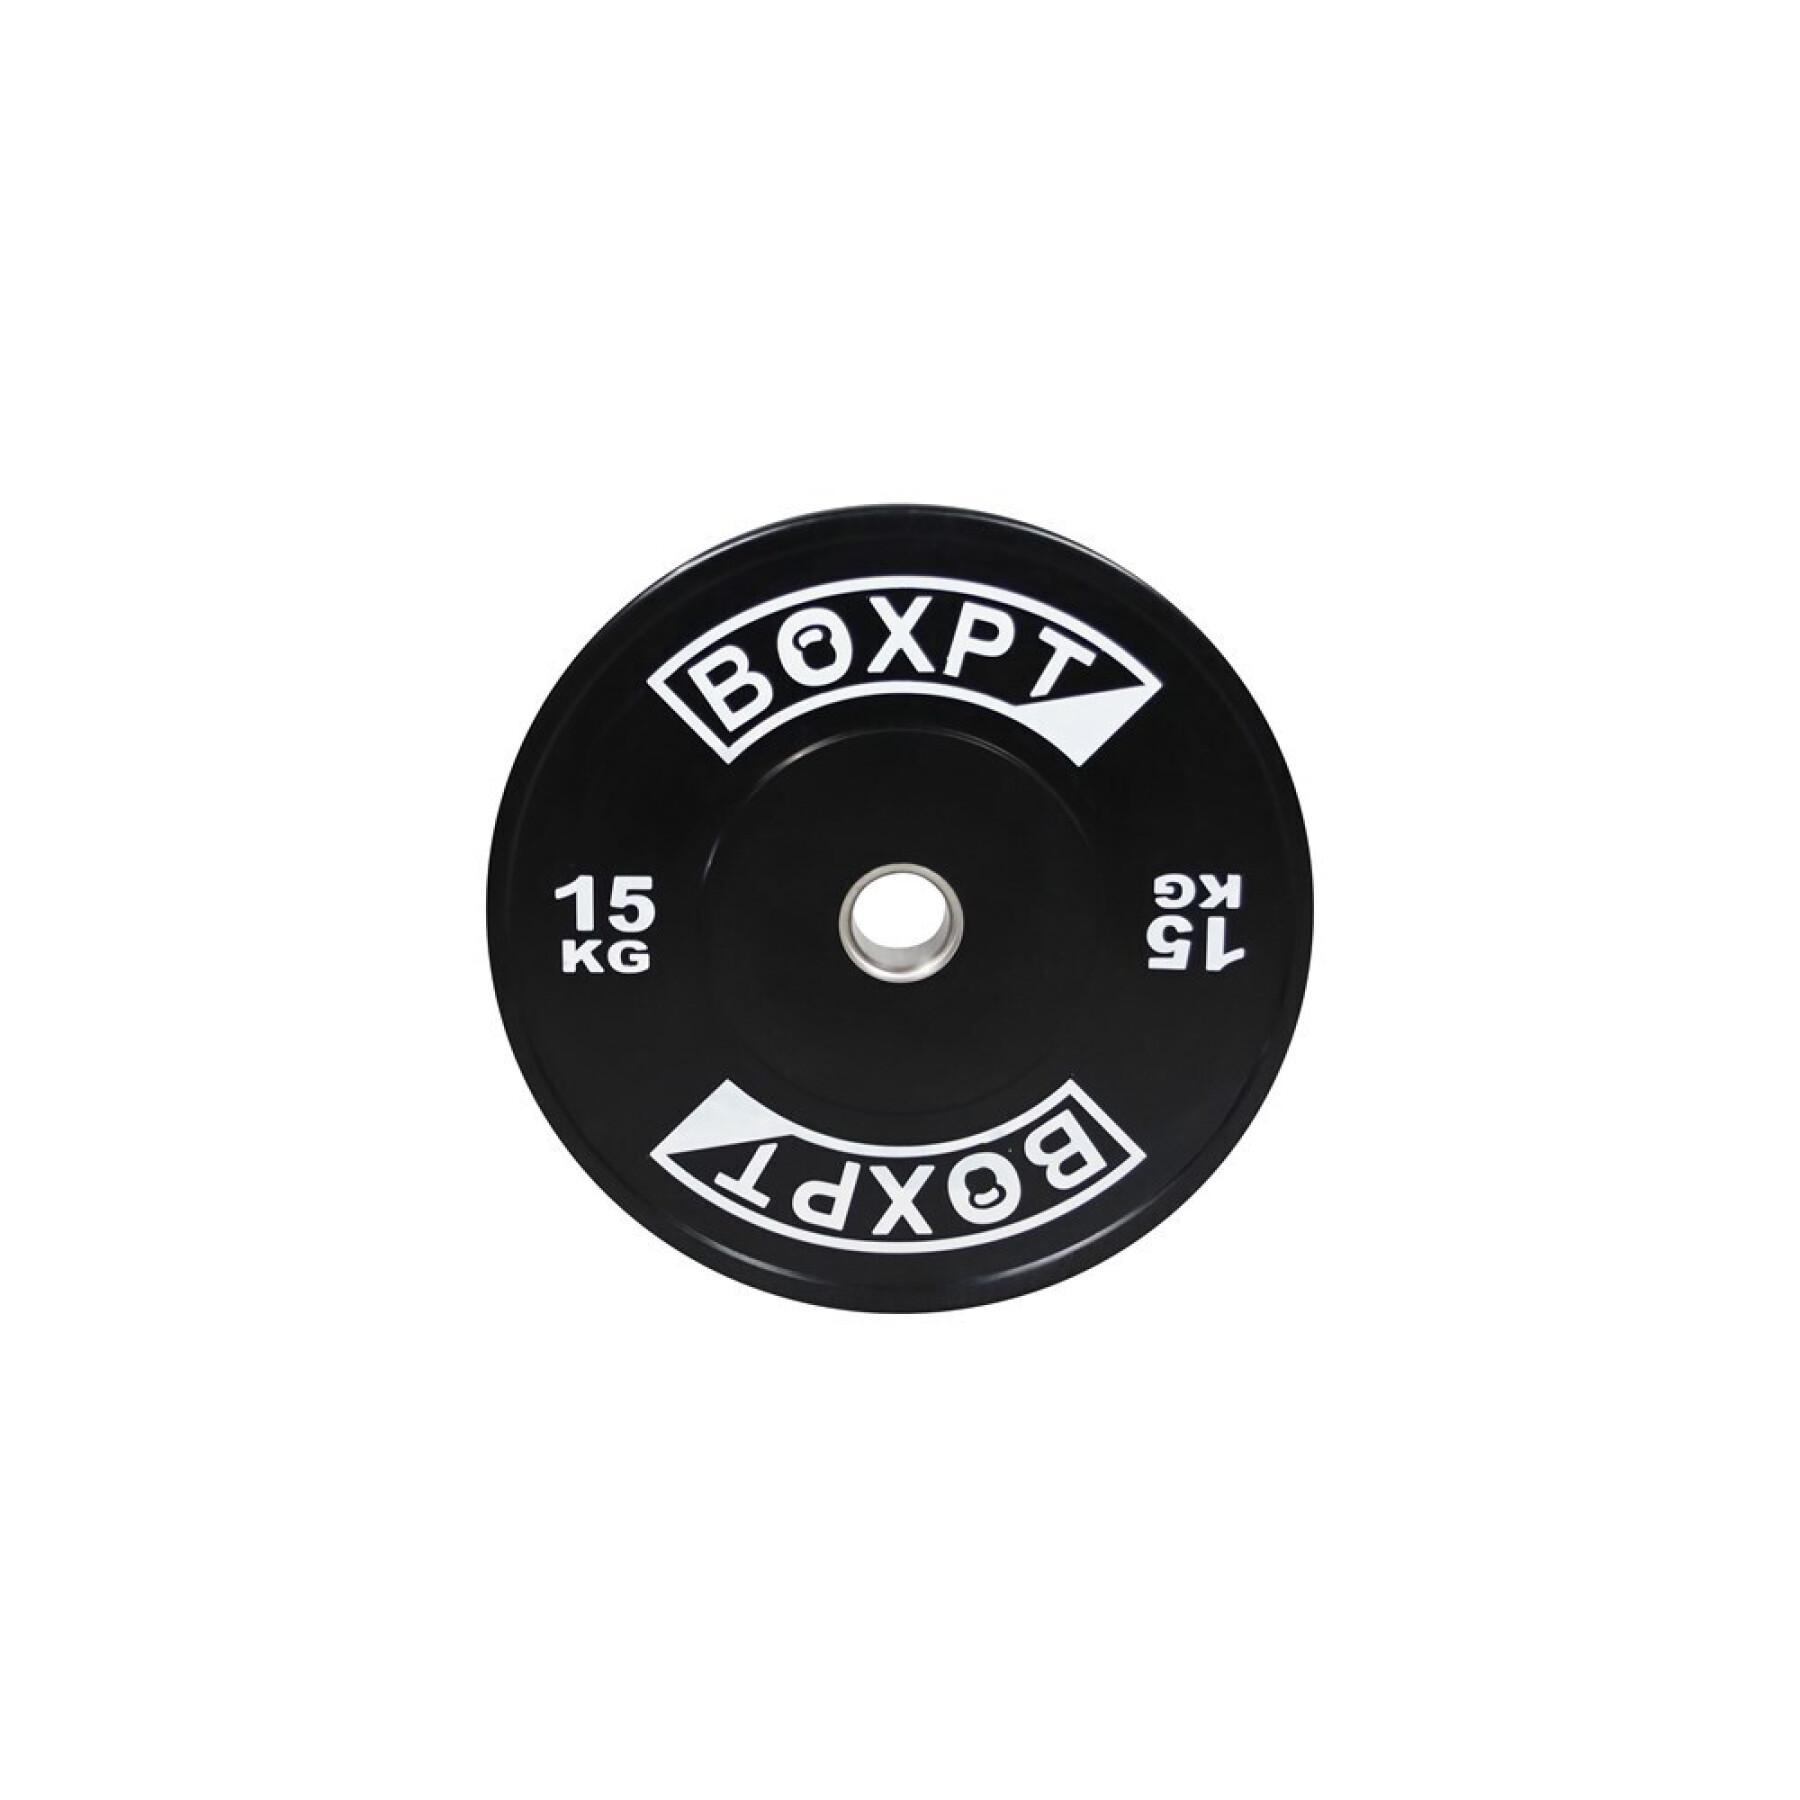 Disco de musculação Boxpt 2.0 - 15 kg